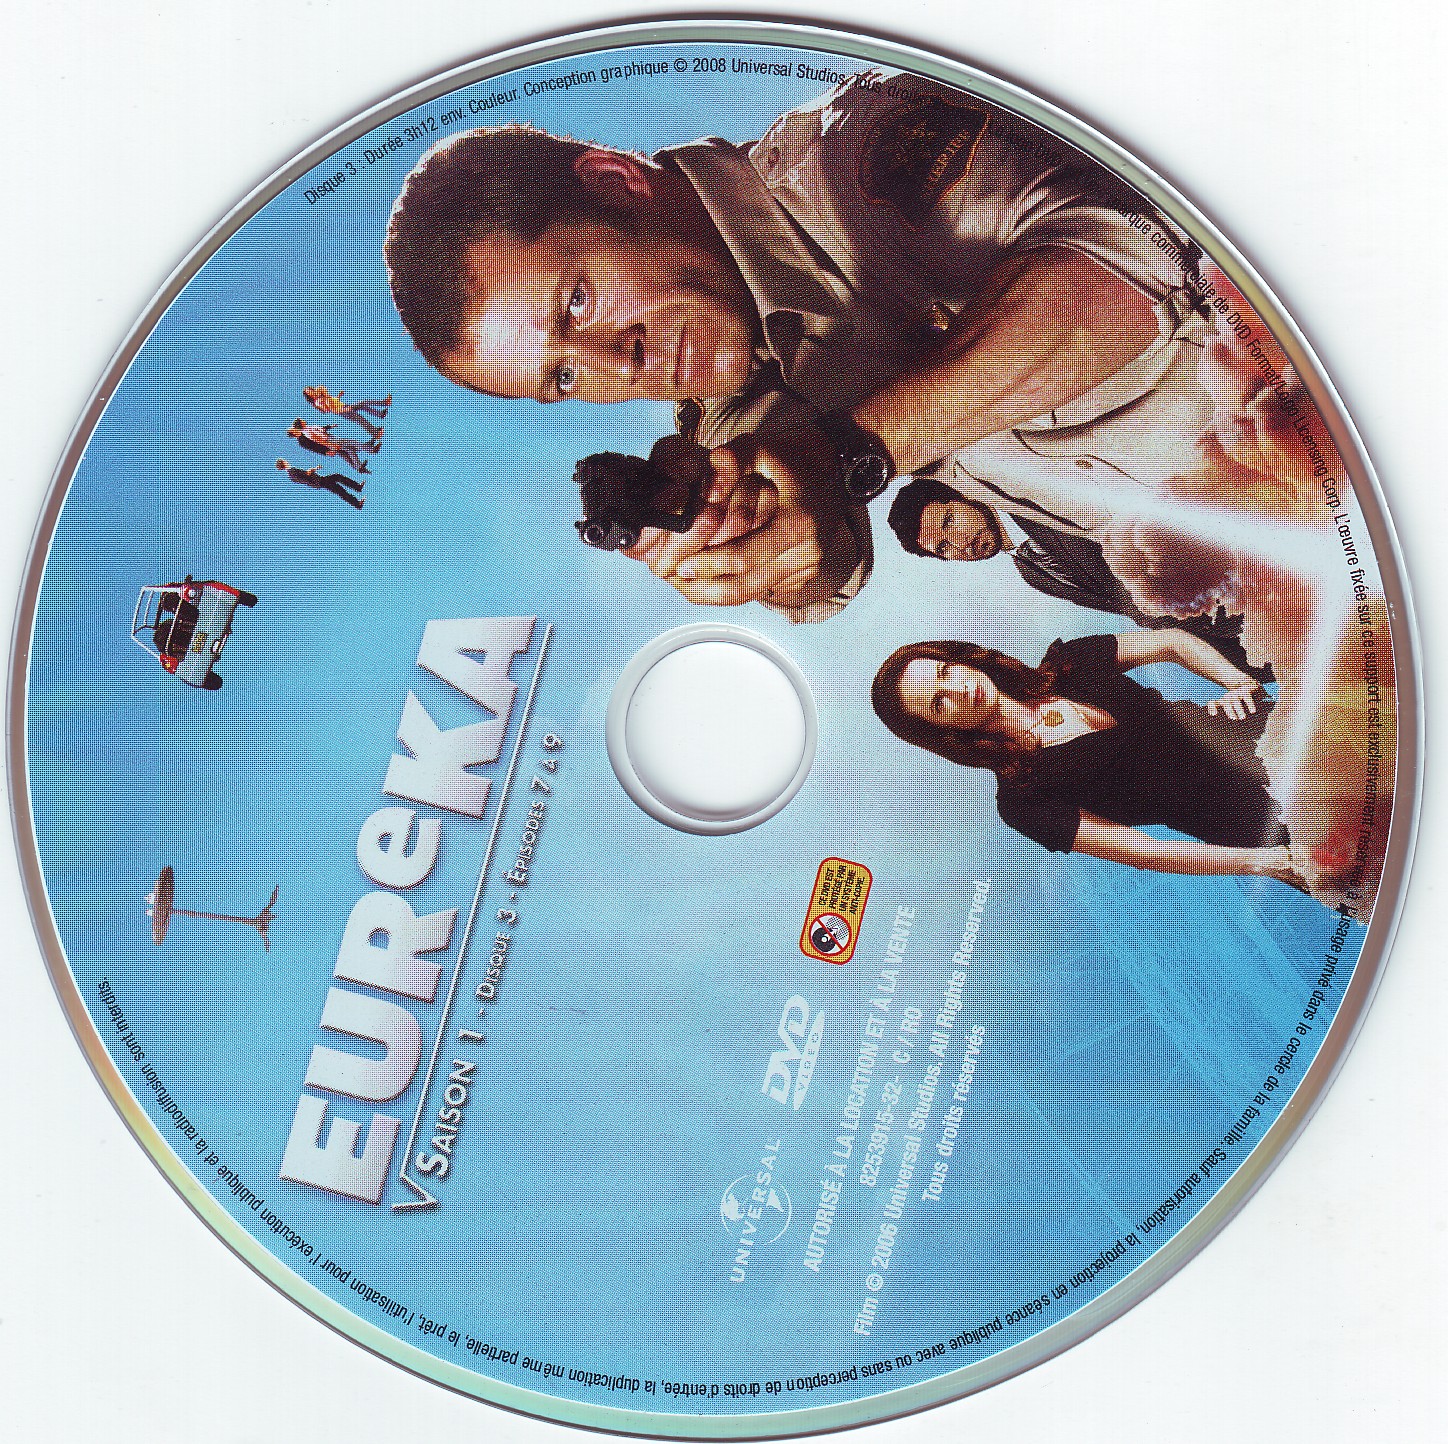 Eureka Saison 1 DISC 3